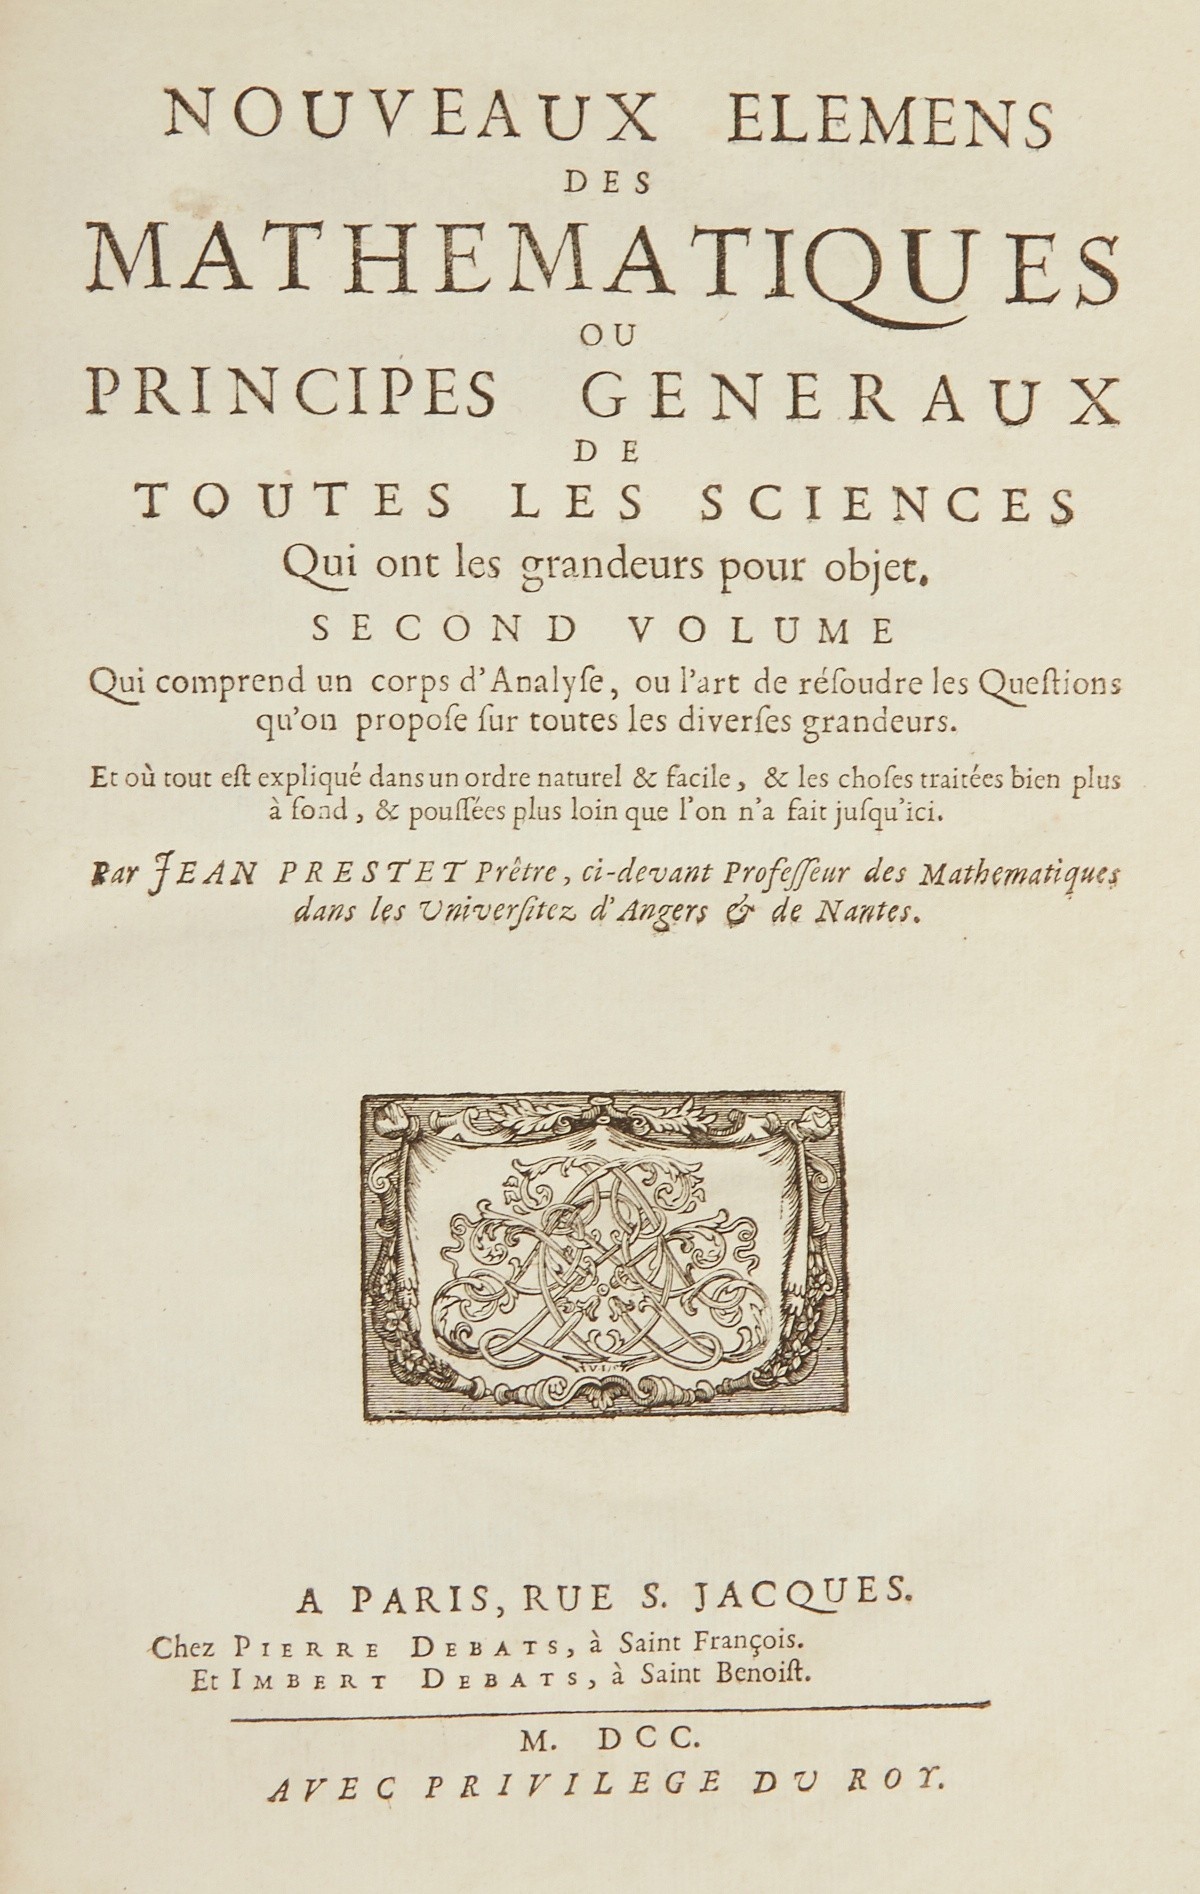 Jean Prestet "Nouveaux Elemens des Mathematiques" 1700 - Image 5 of 6